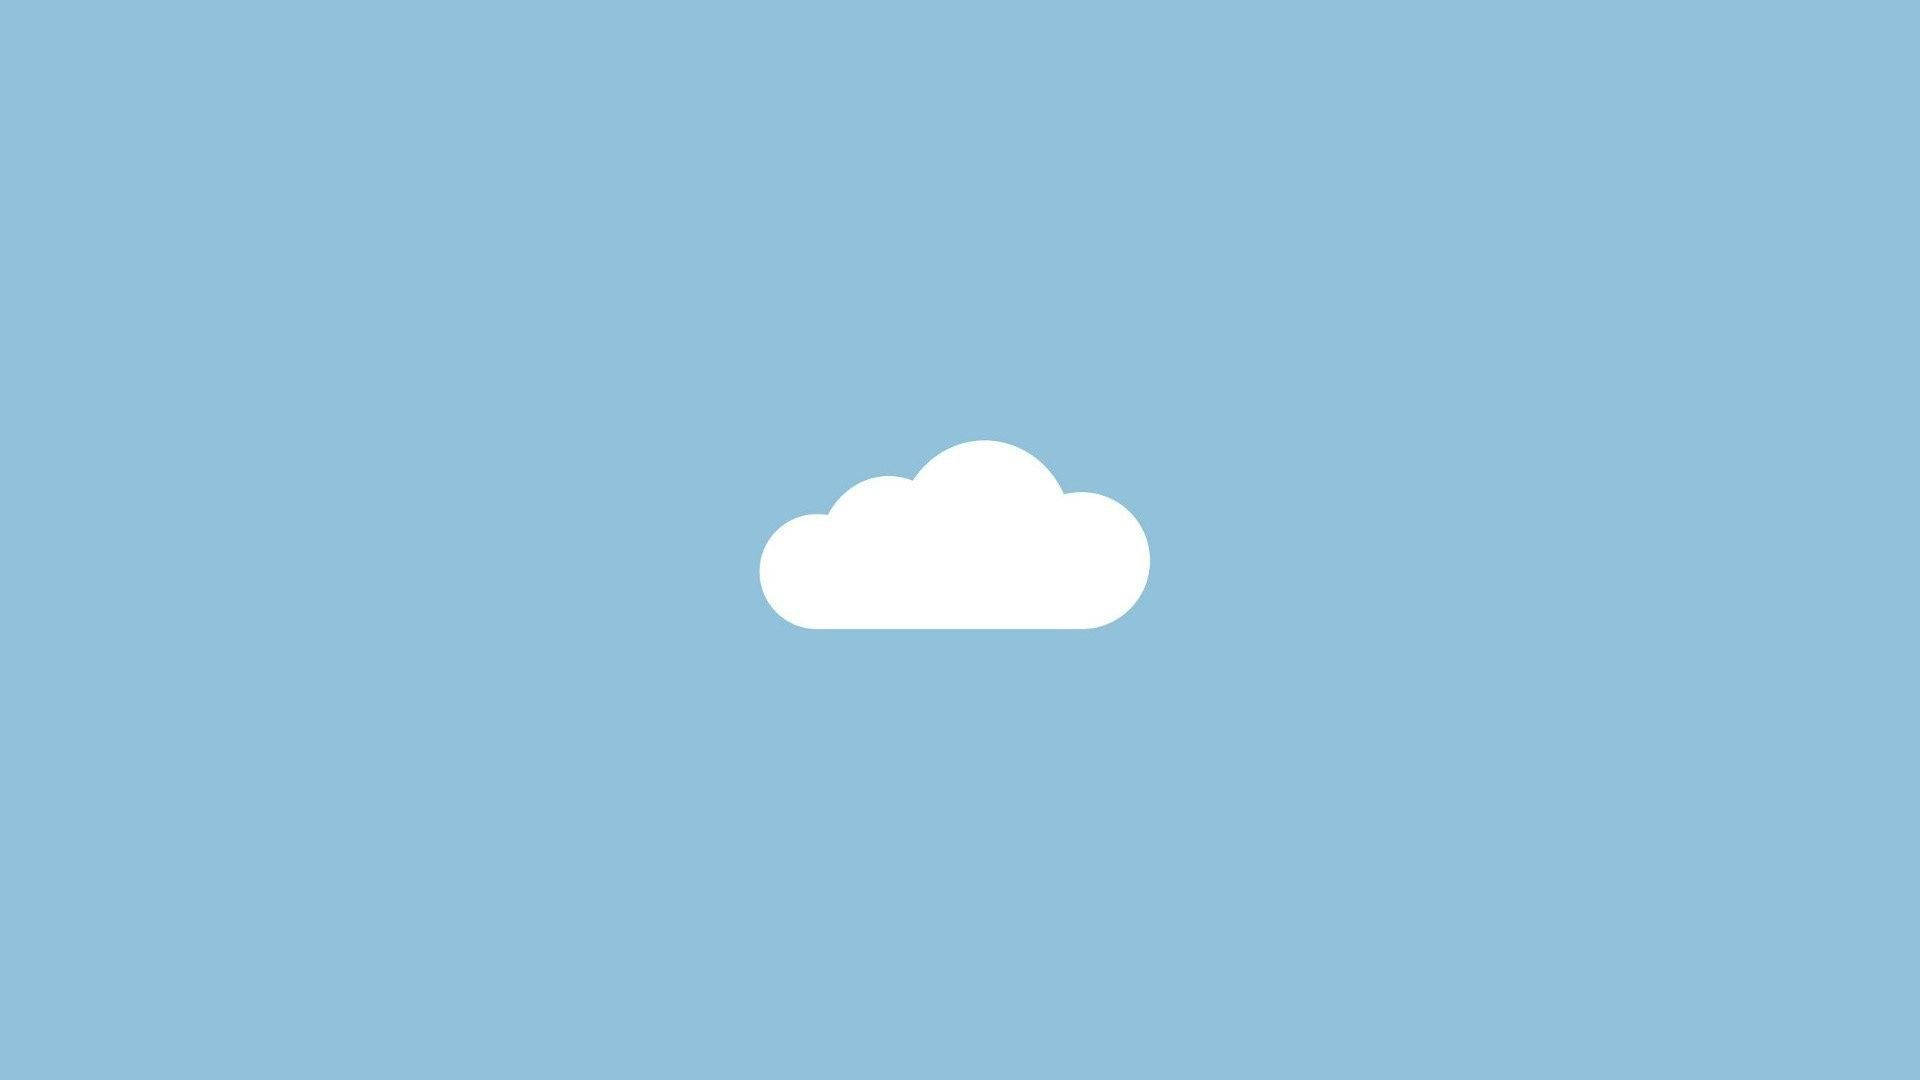 Cloud In A Baby Blue Sky